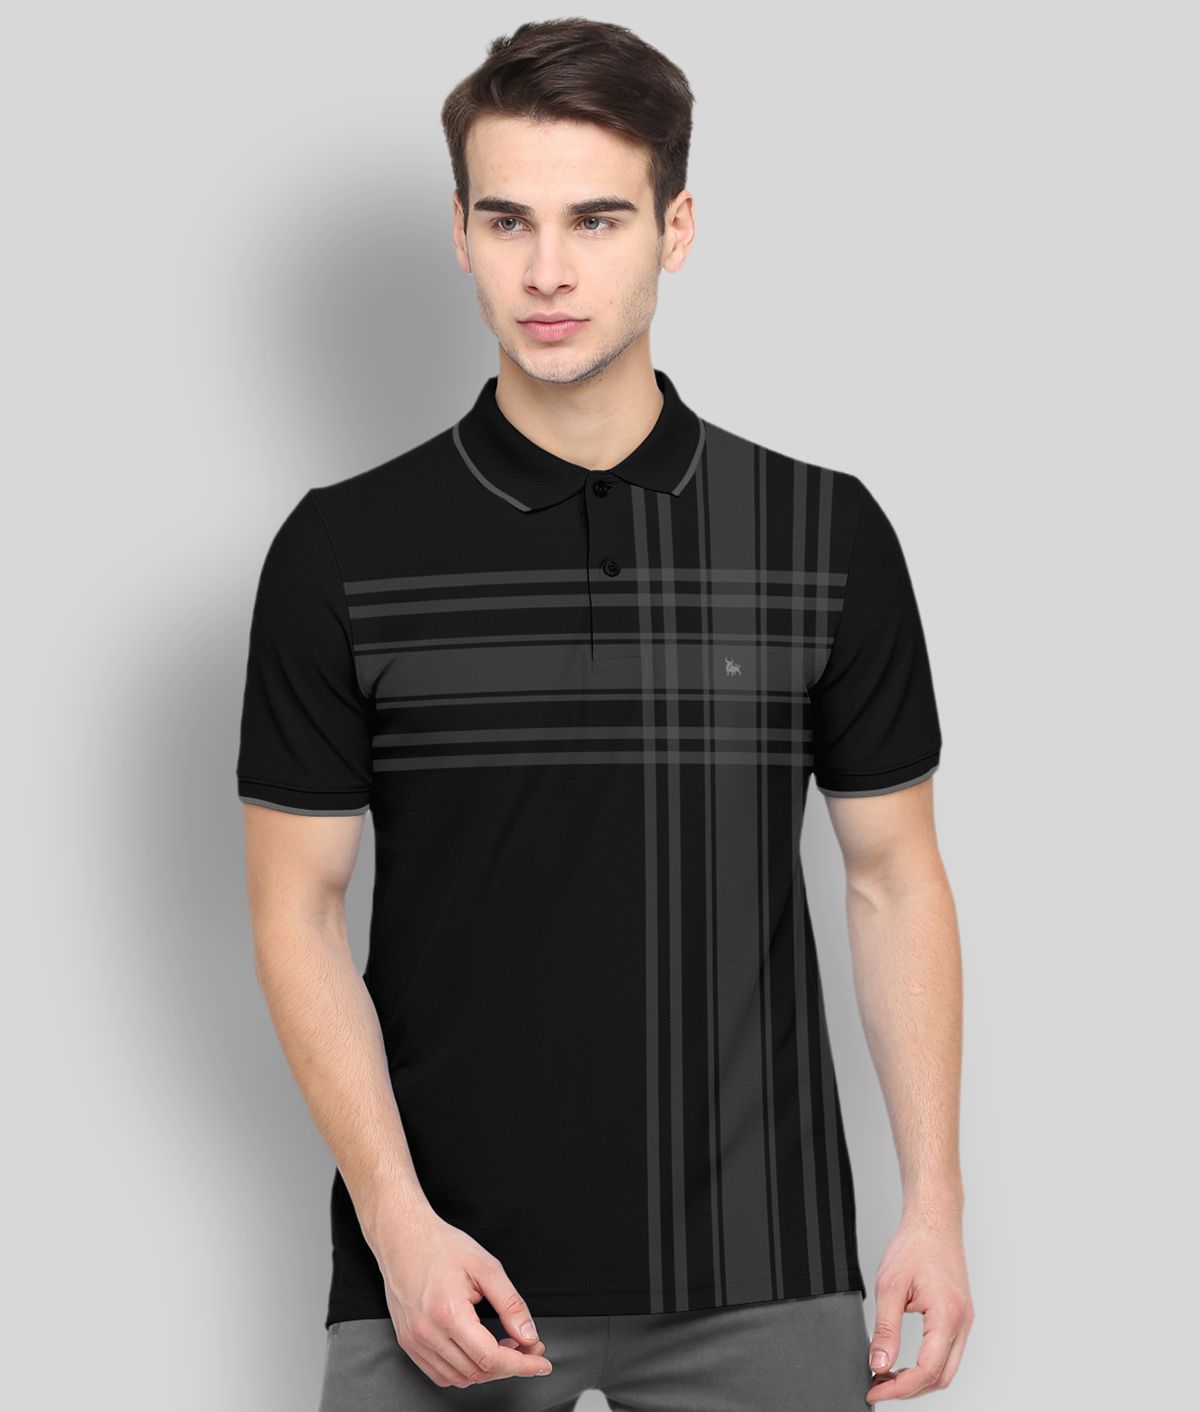     			BULLMER - Black Cotton Blend Regular Fit Men's Polo T Shirt ( Pack of 1 )